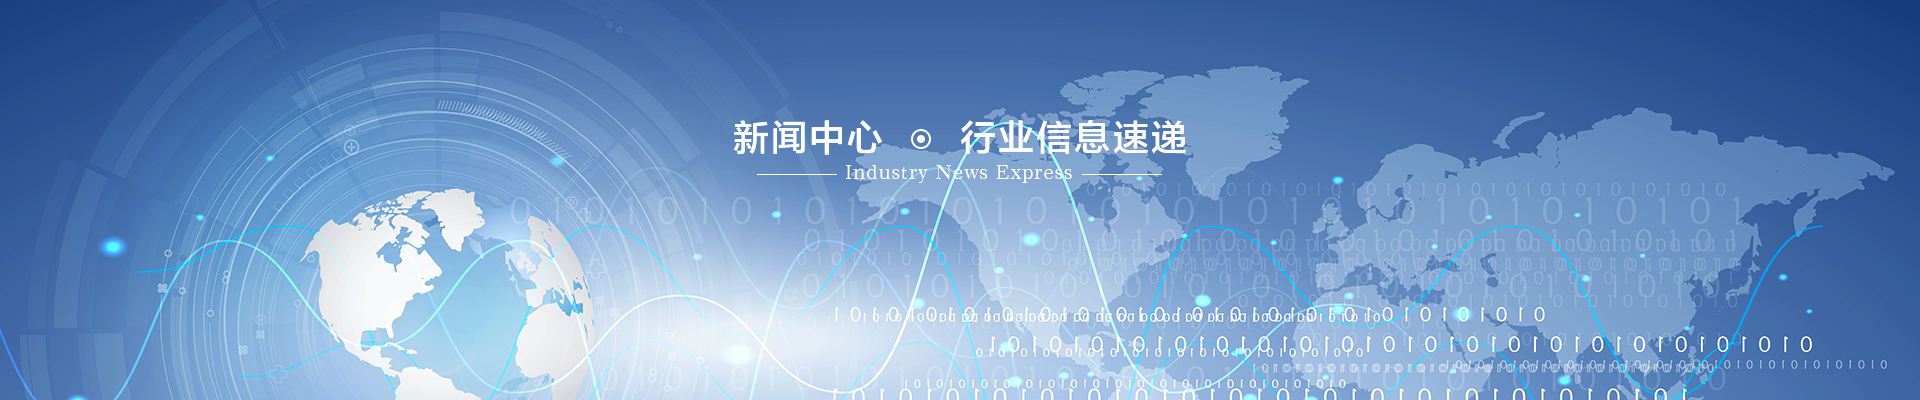 广州生产LCD液晶生产信息电子看板-电子看板-液晶生产看板-20201009新闻资讯-武汉天傲科技有限公司